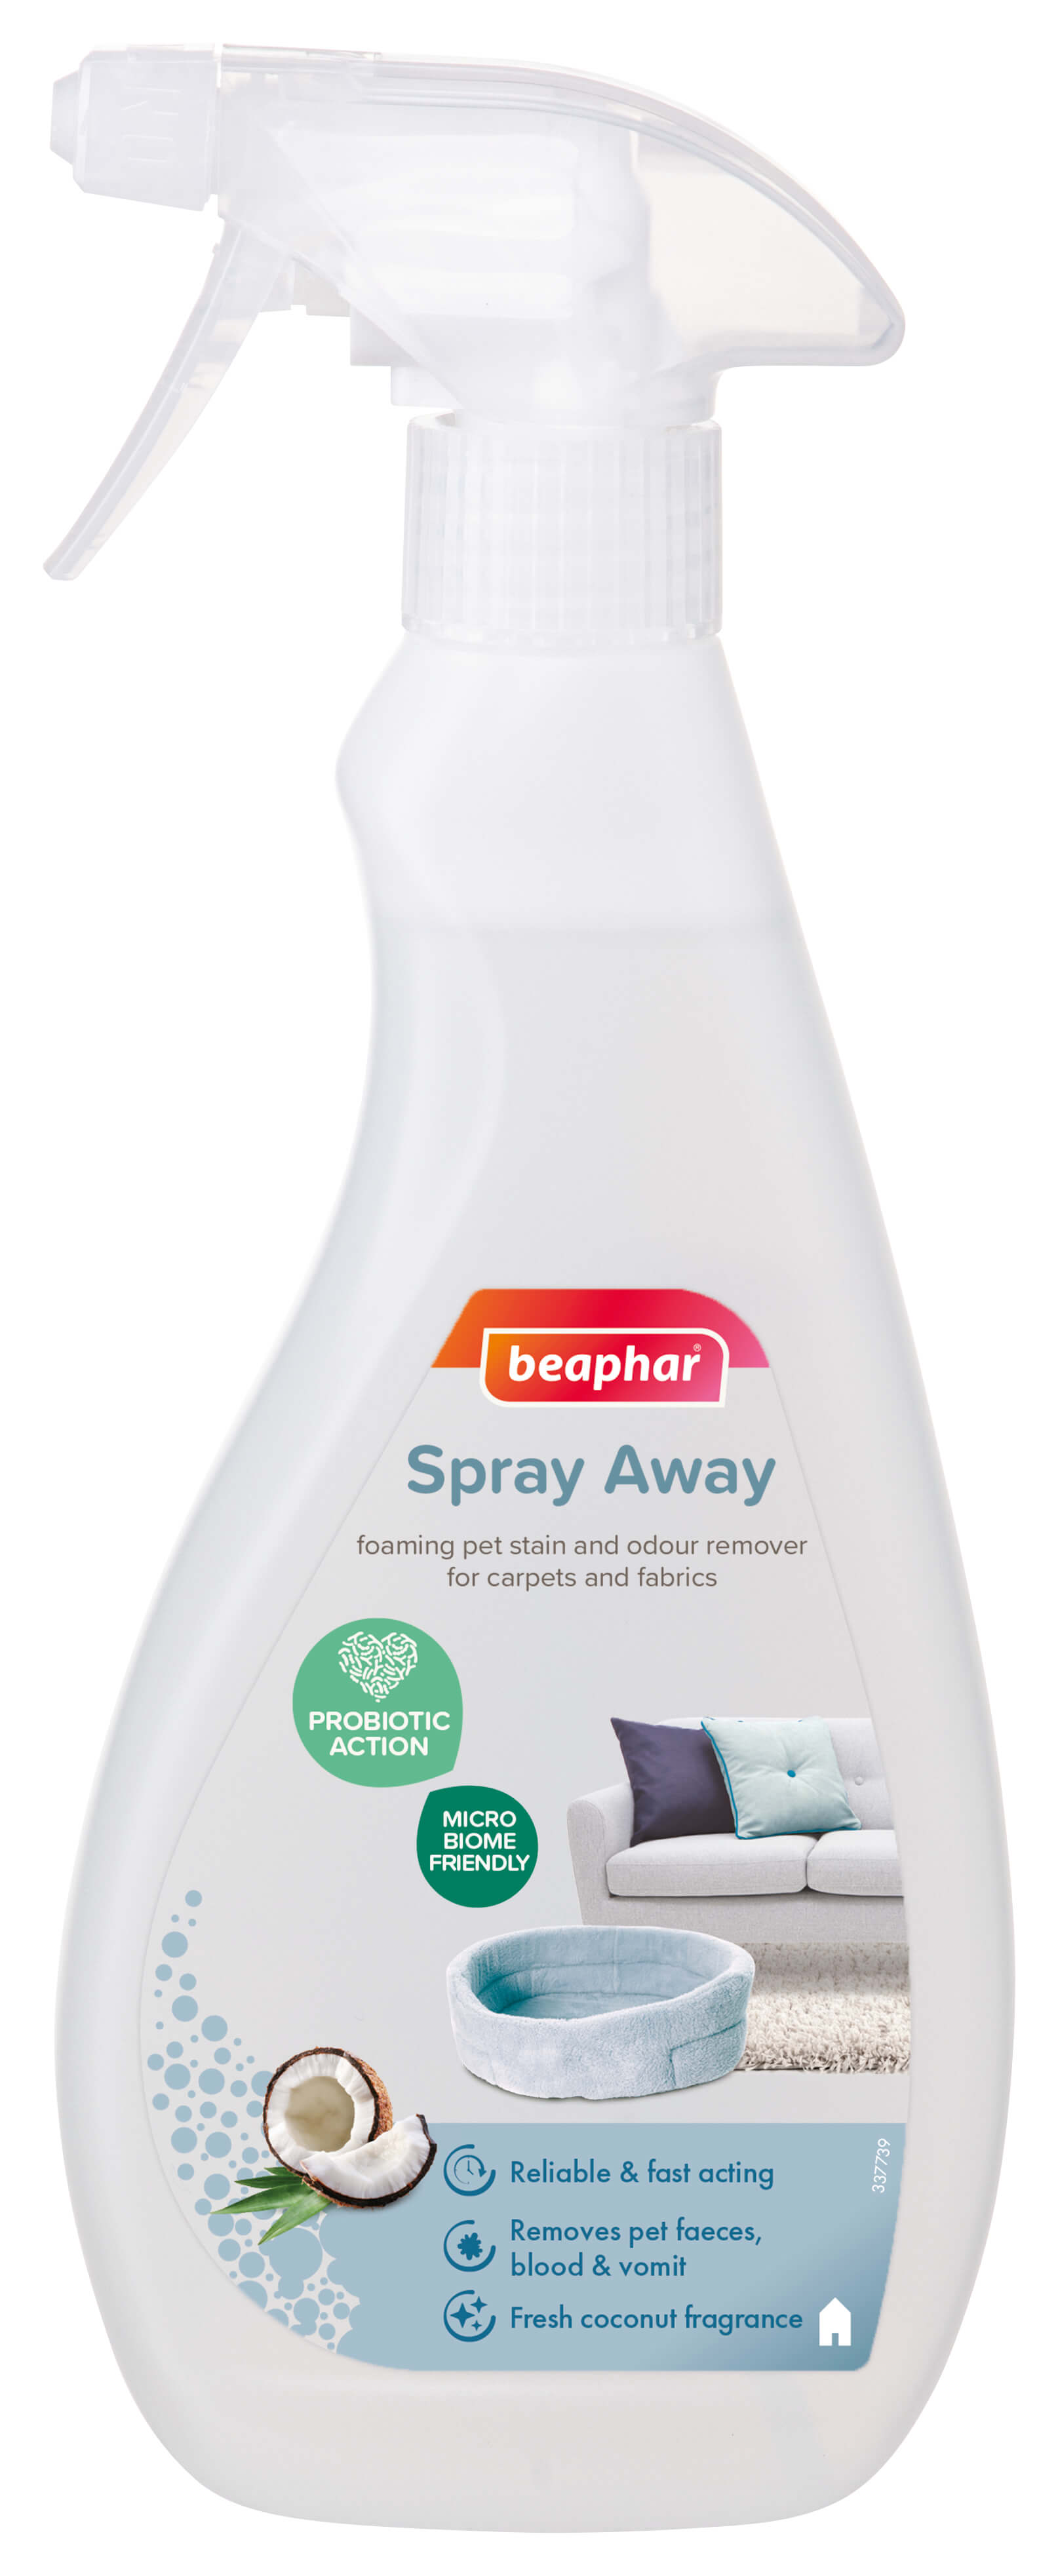 beaphar-spray-away-carpet-cleaner